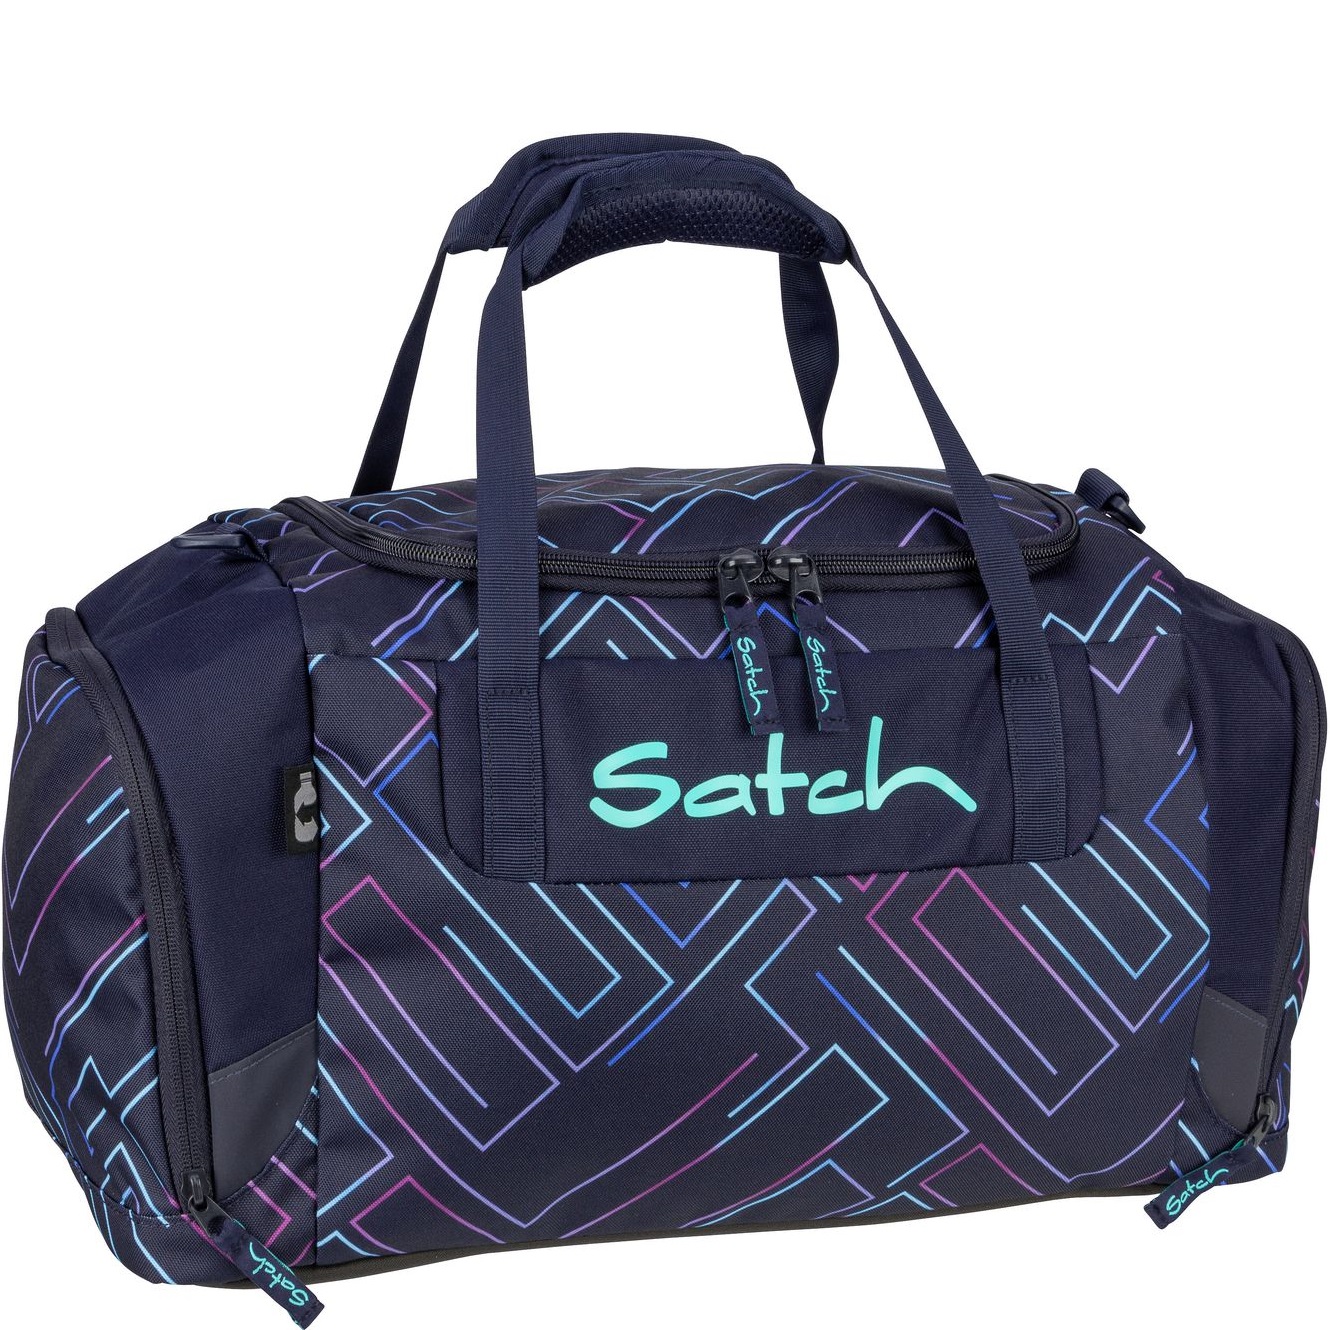 satch satch Sporttasche 2.0 in Purple Laser vor weißem Hintergrund